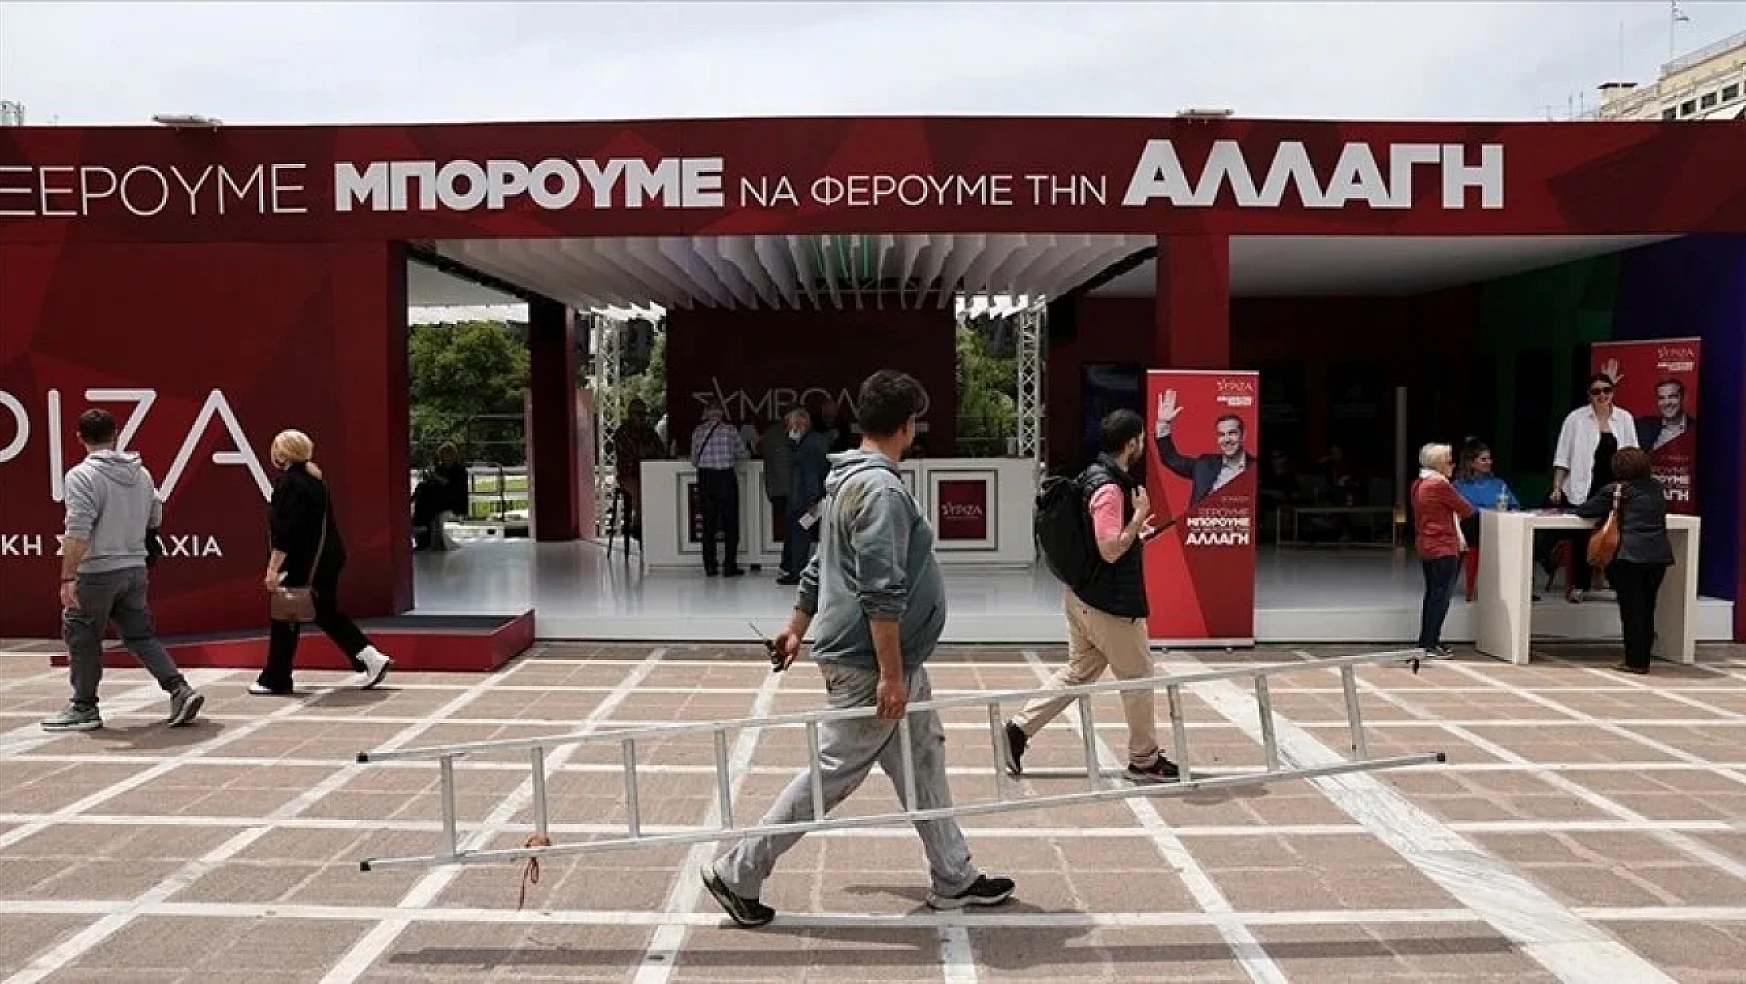 Yunanistan'da seçimler yaklaşırken, partiler seçmene ne vaad ediyor?